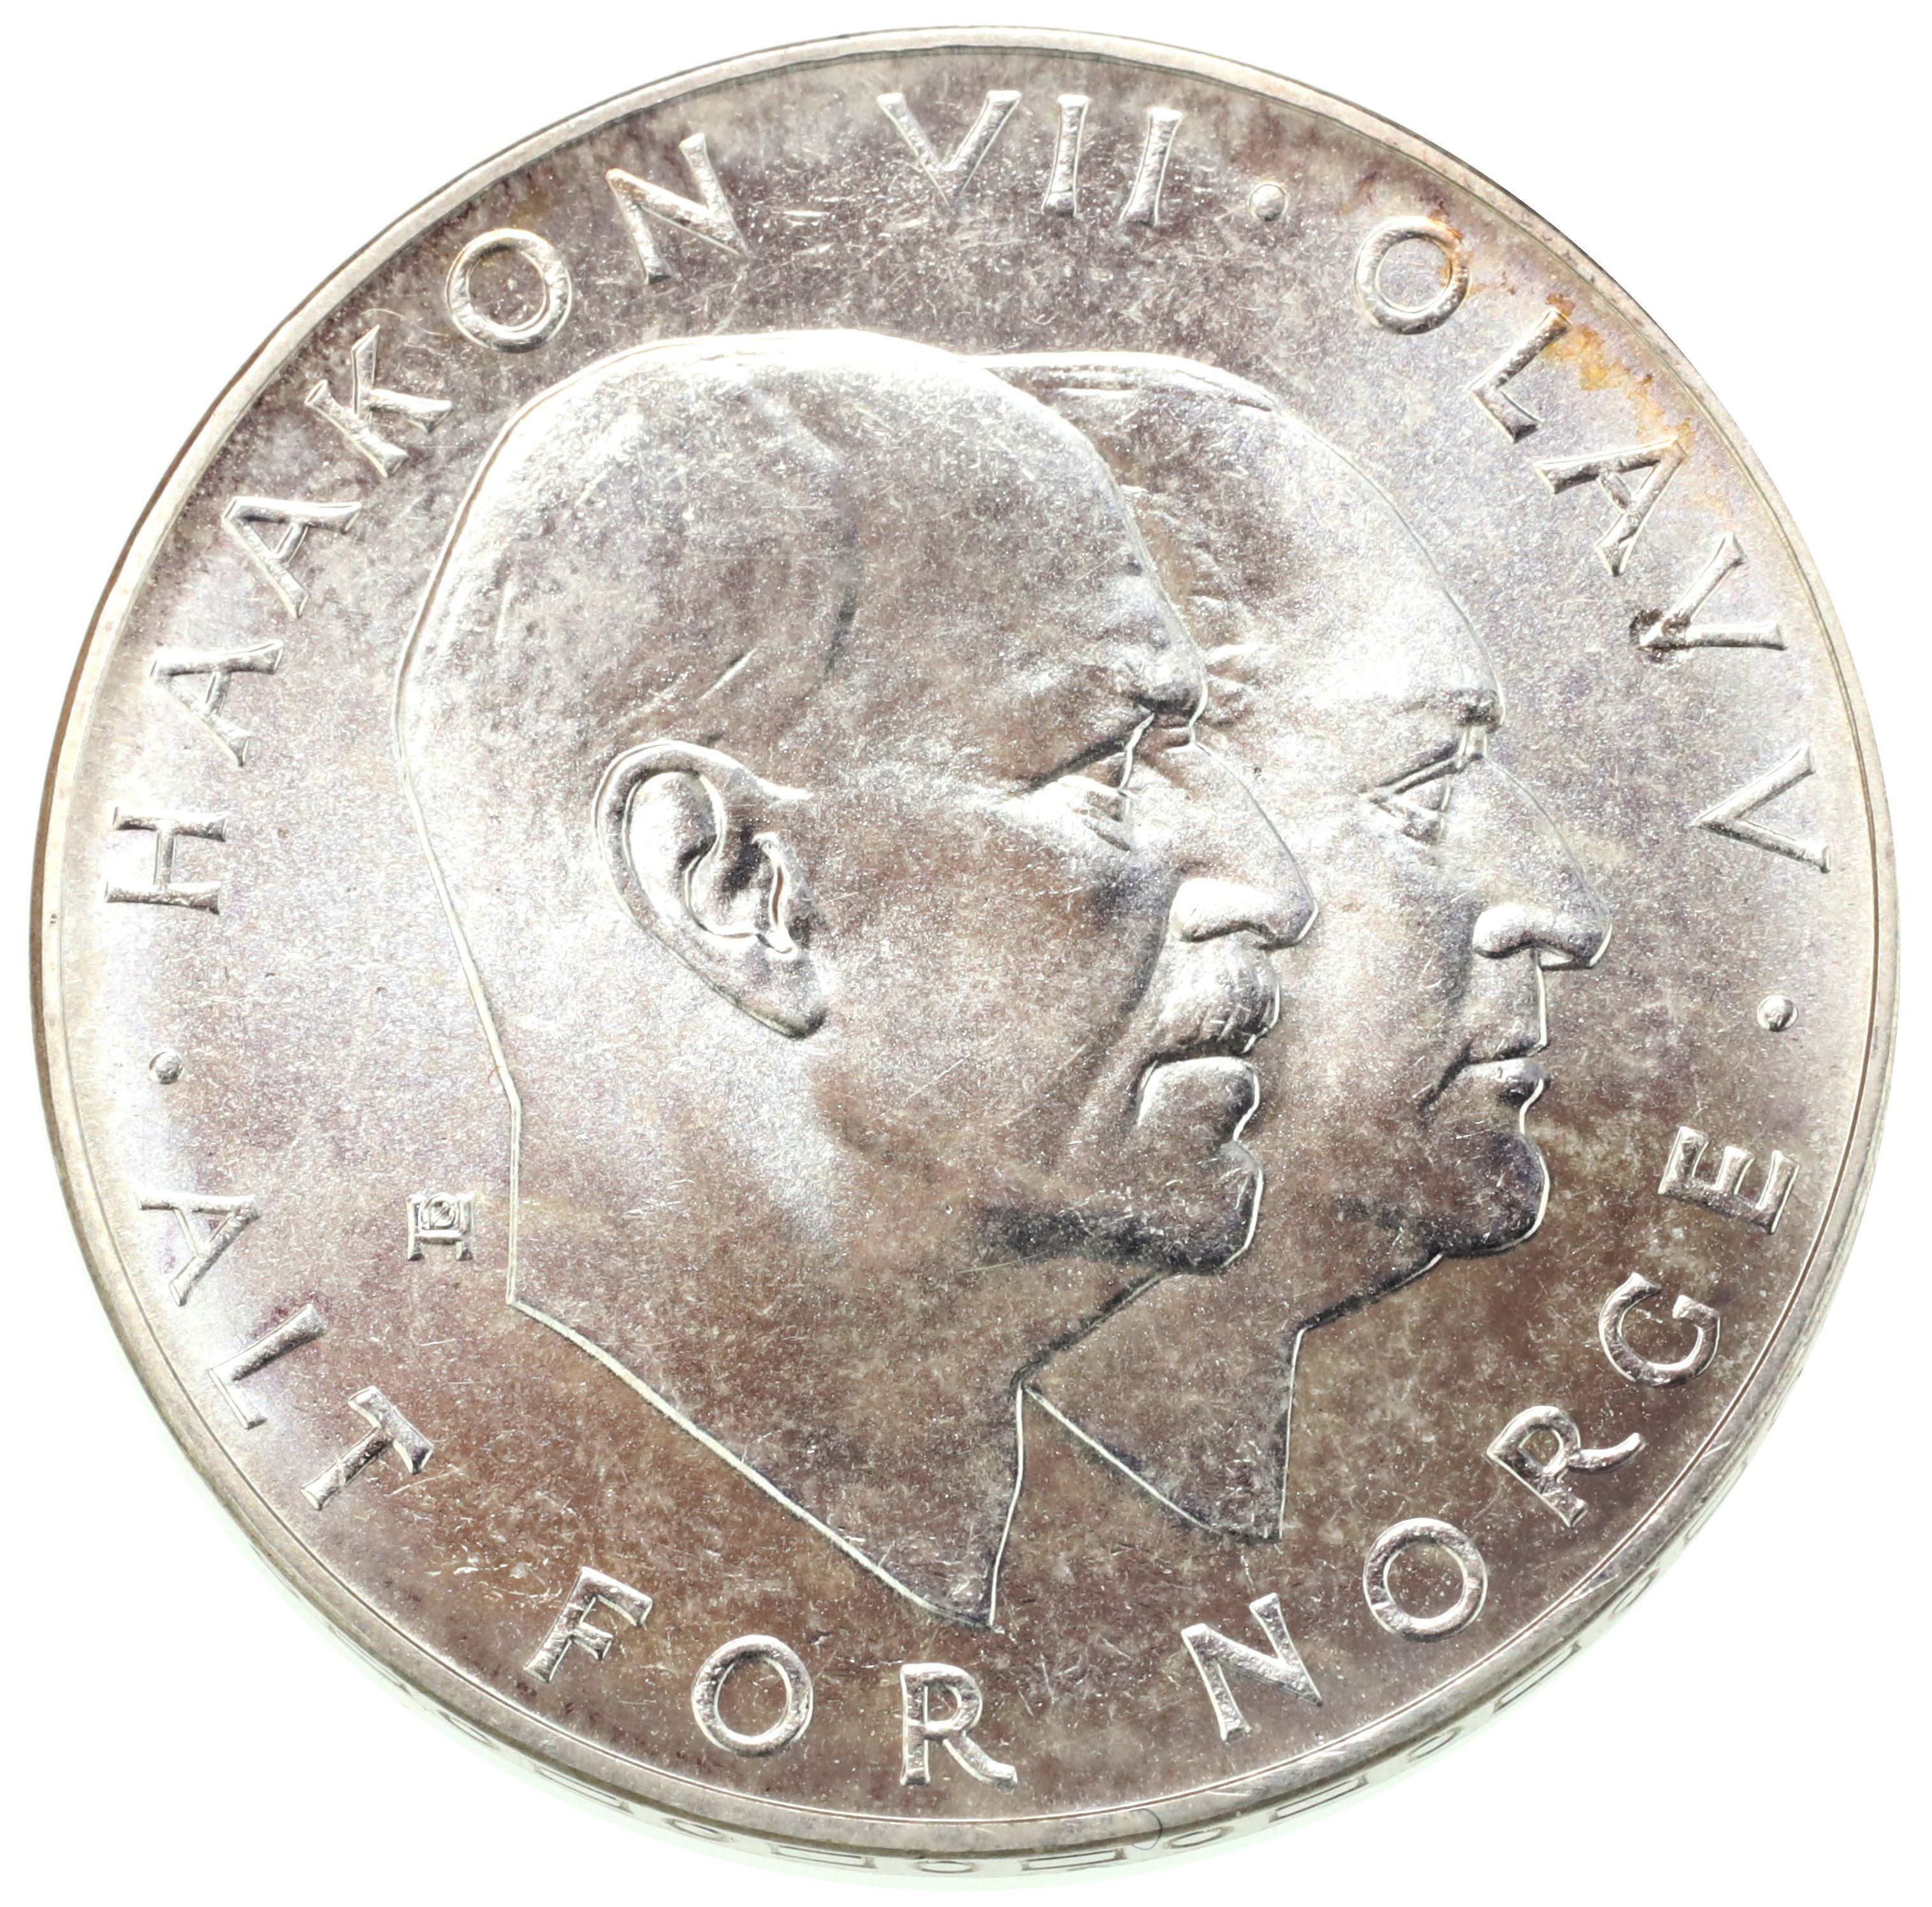 ノルウェー 1970年 25クローネ銀貨 解放２５周年記念 | Luna Auc